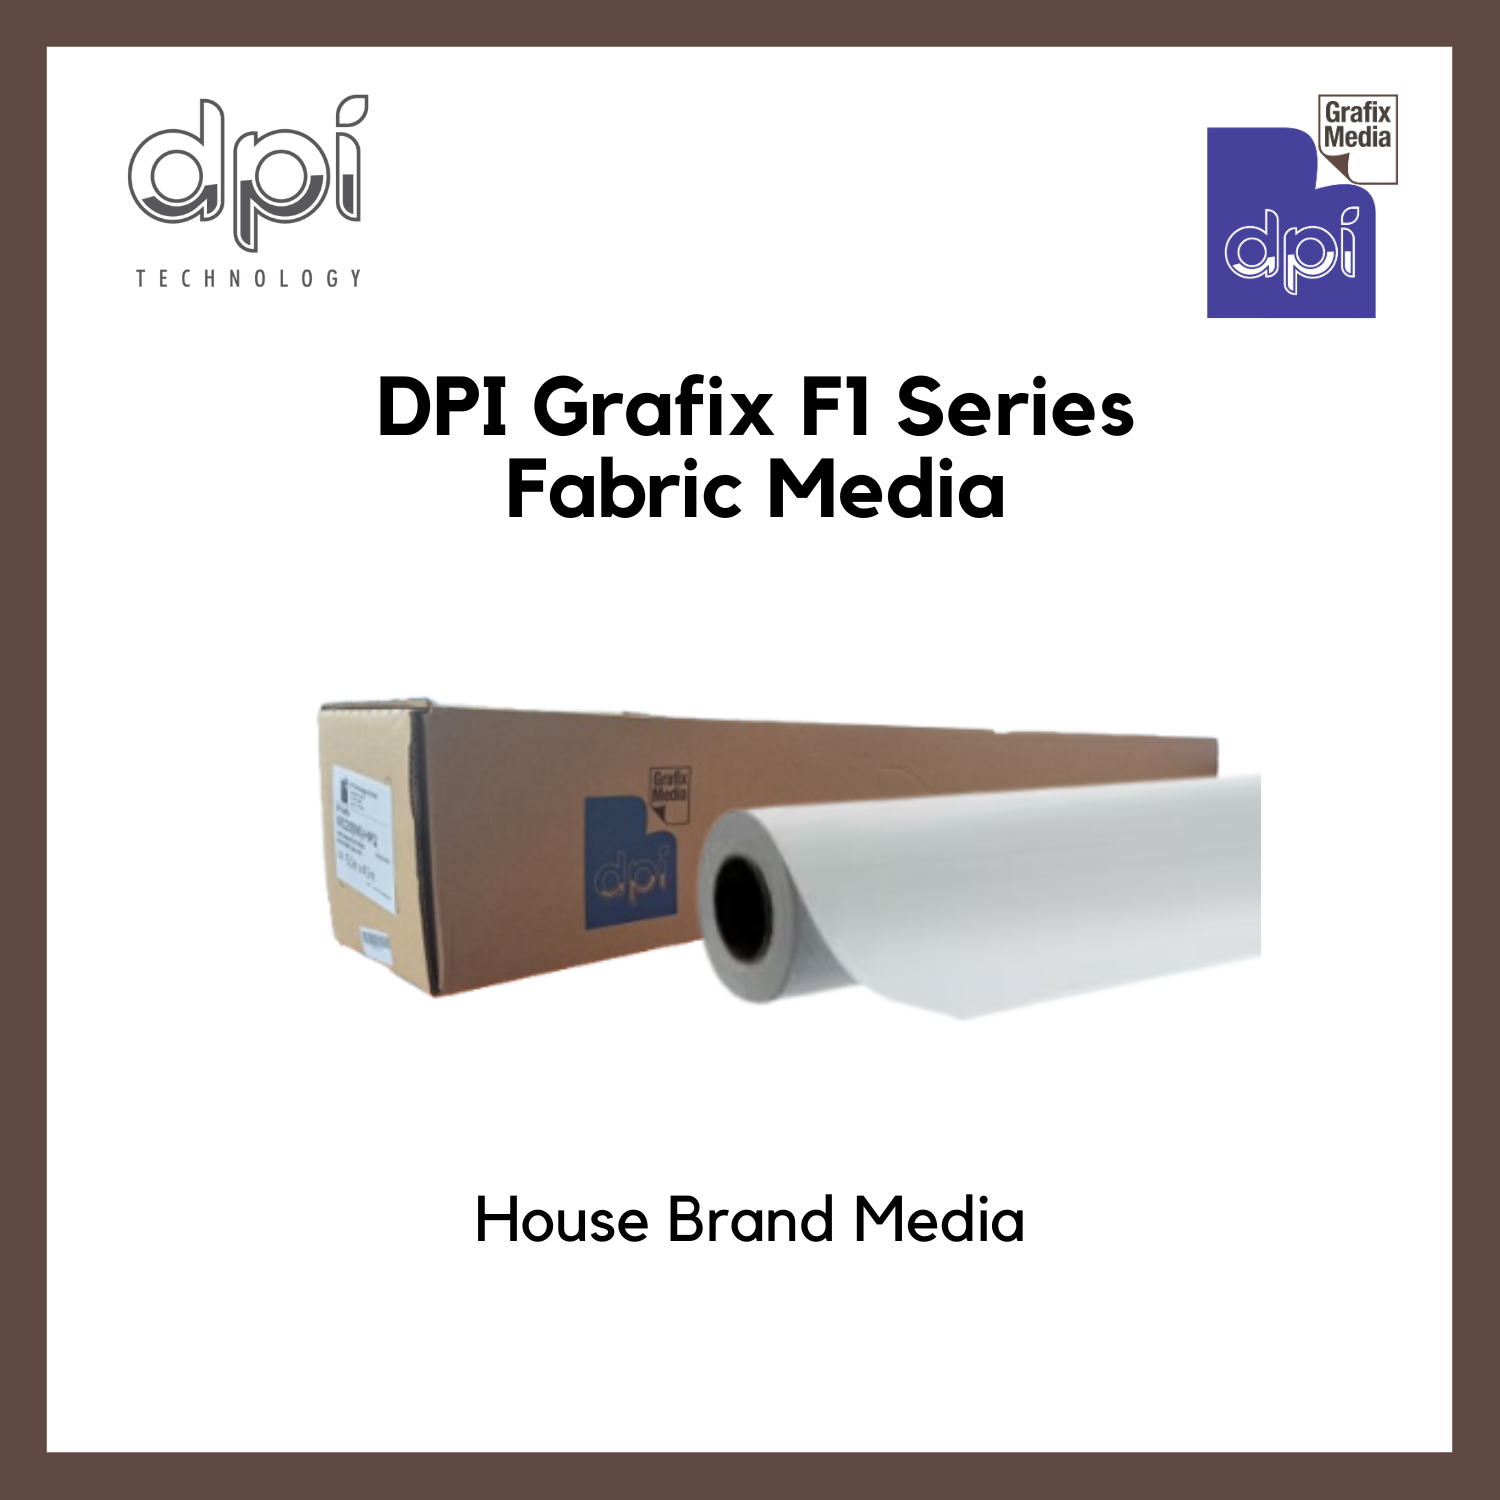 DPI Grafix F1 Series Fabric Media